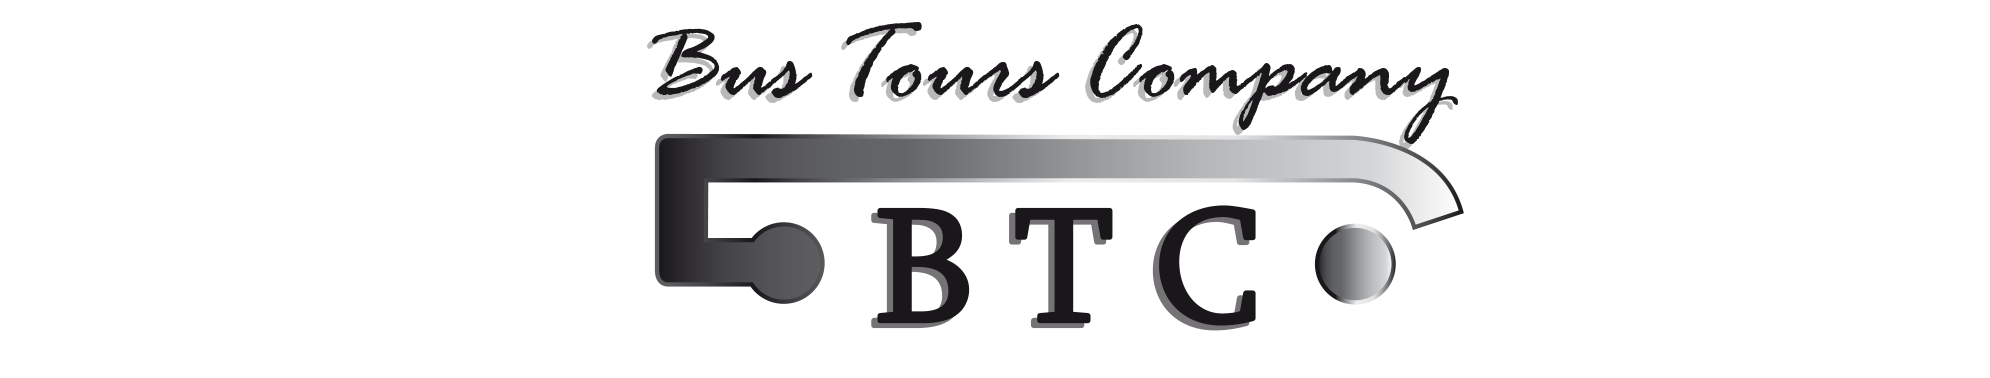 Bus Tours Company